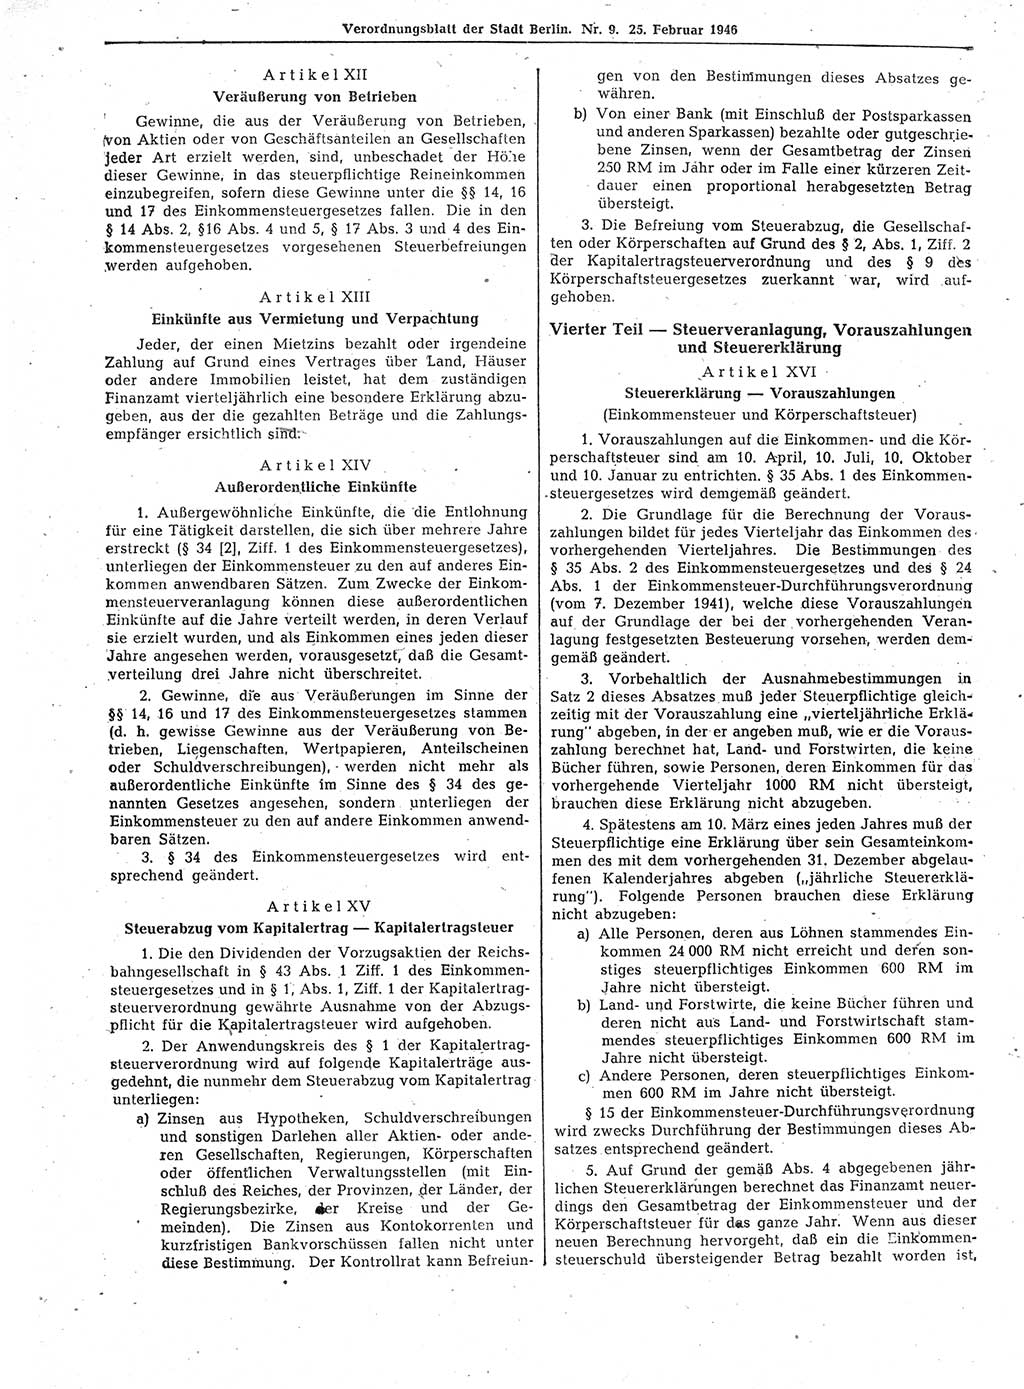 Verordnungsblatt (VOBl.) der Stadt Berlin, für Groß-Berlin 1946, Seite 50 (VOBl. Bln. 1946, S. 50)